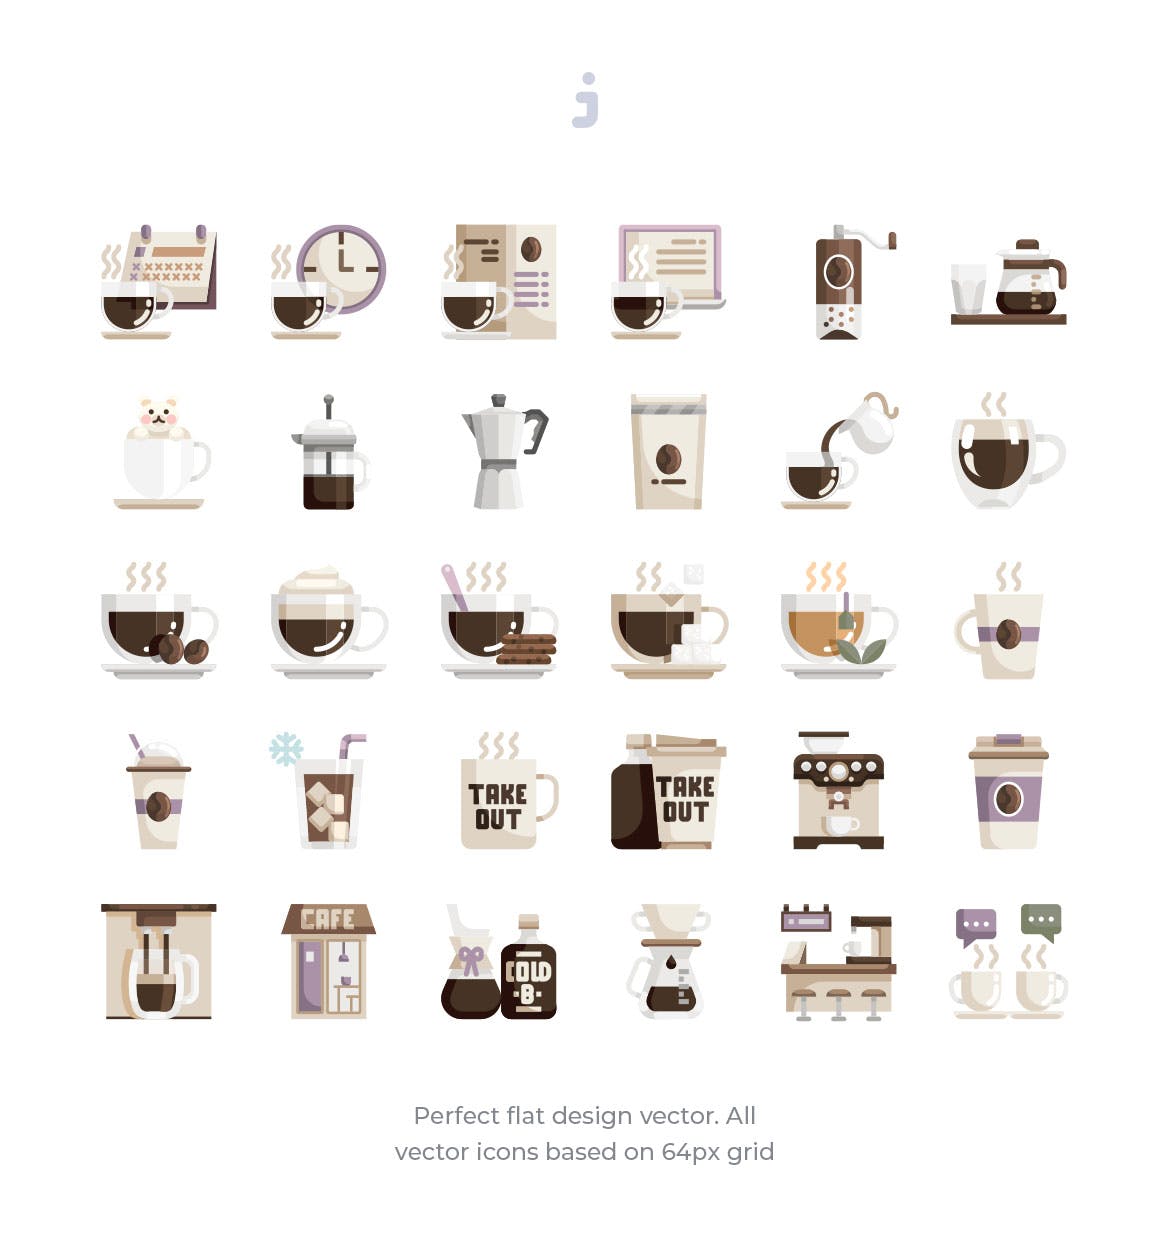 30枚咖啡/咖啡店扁平设计风格矢量非凡图库精选图标素材 30 Coffee Shop Icons – Flat插图(1)